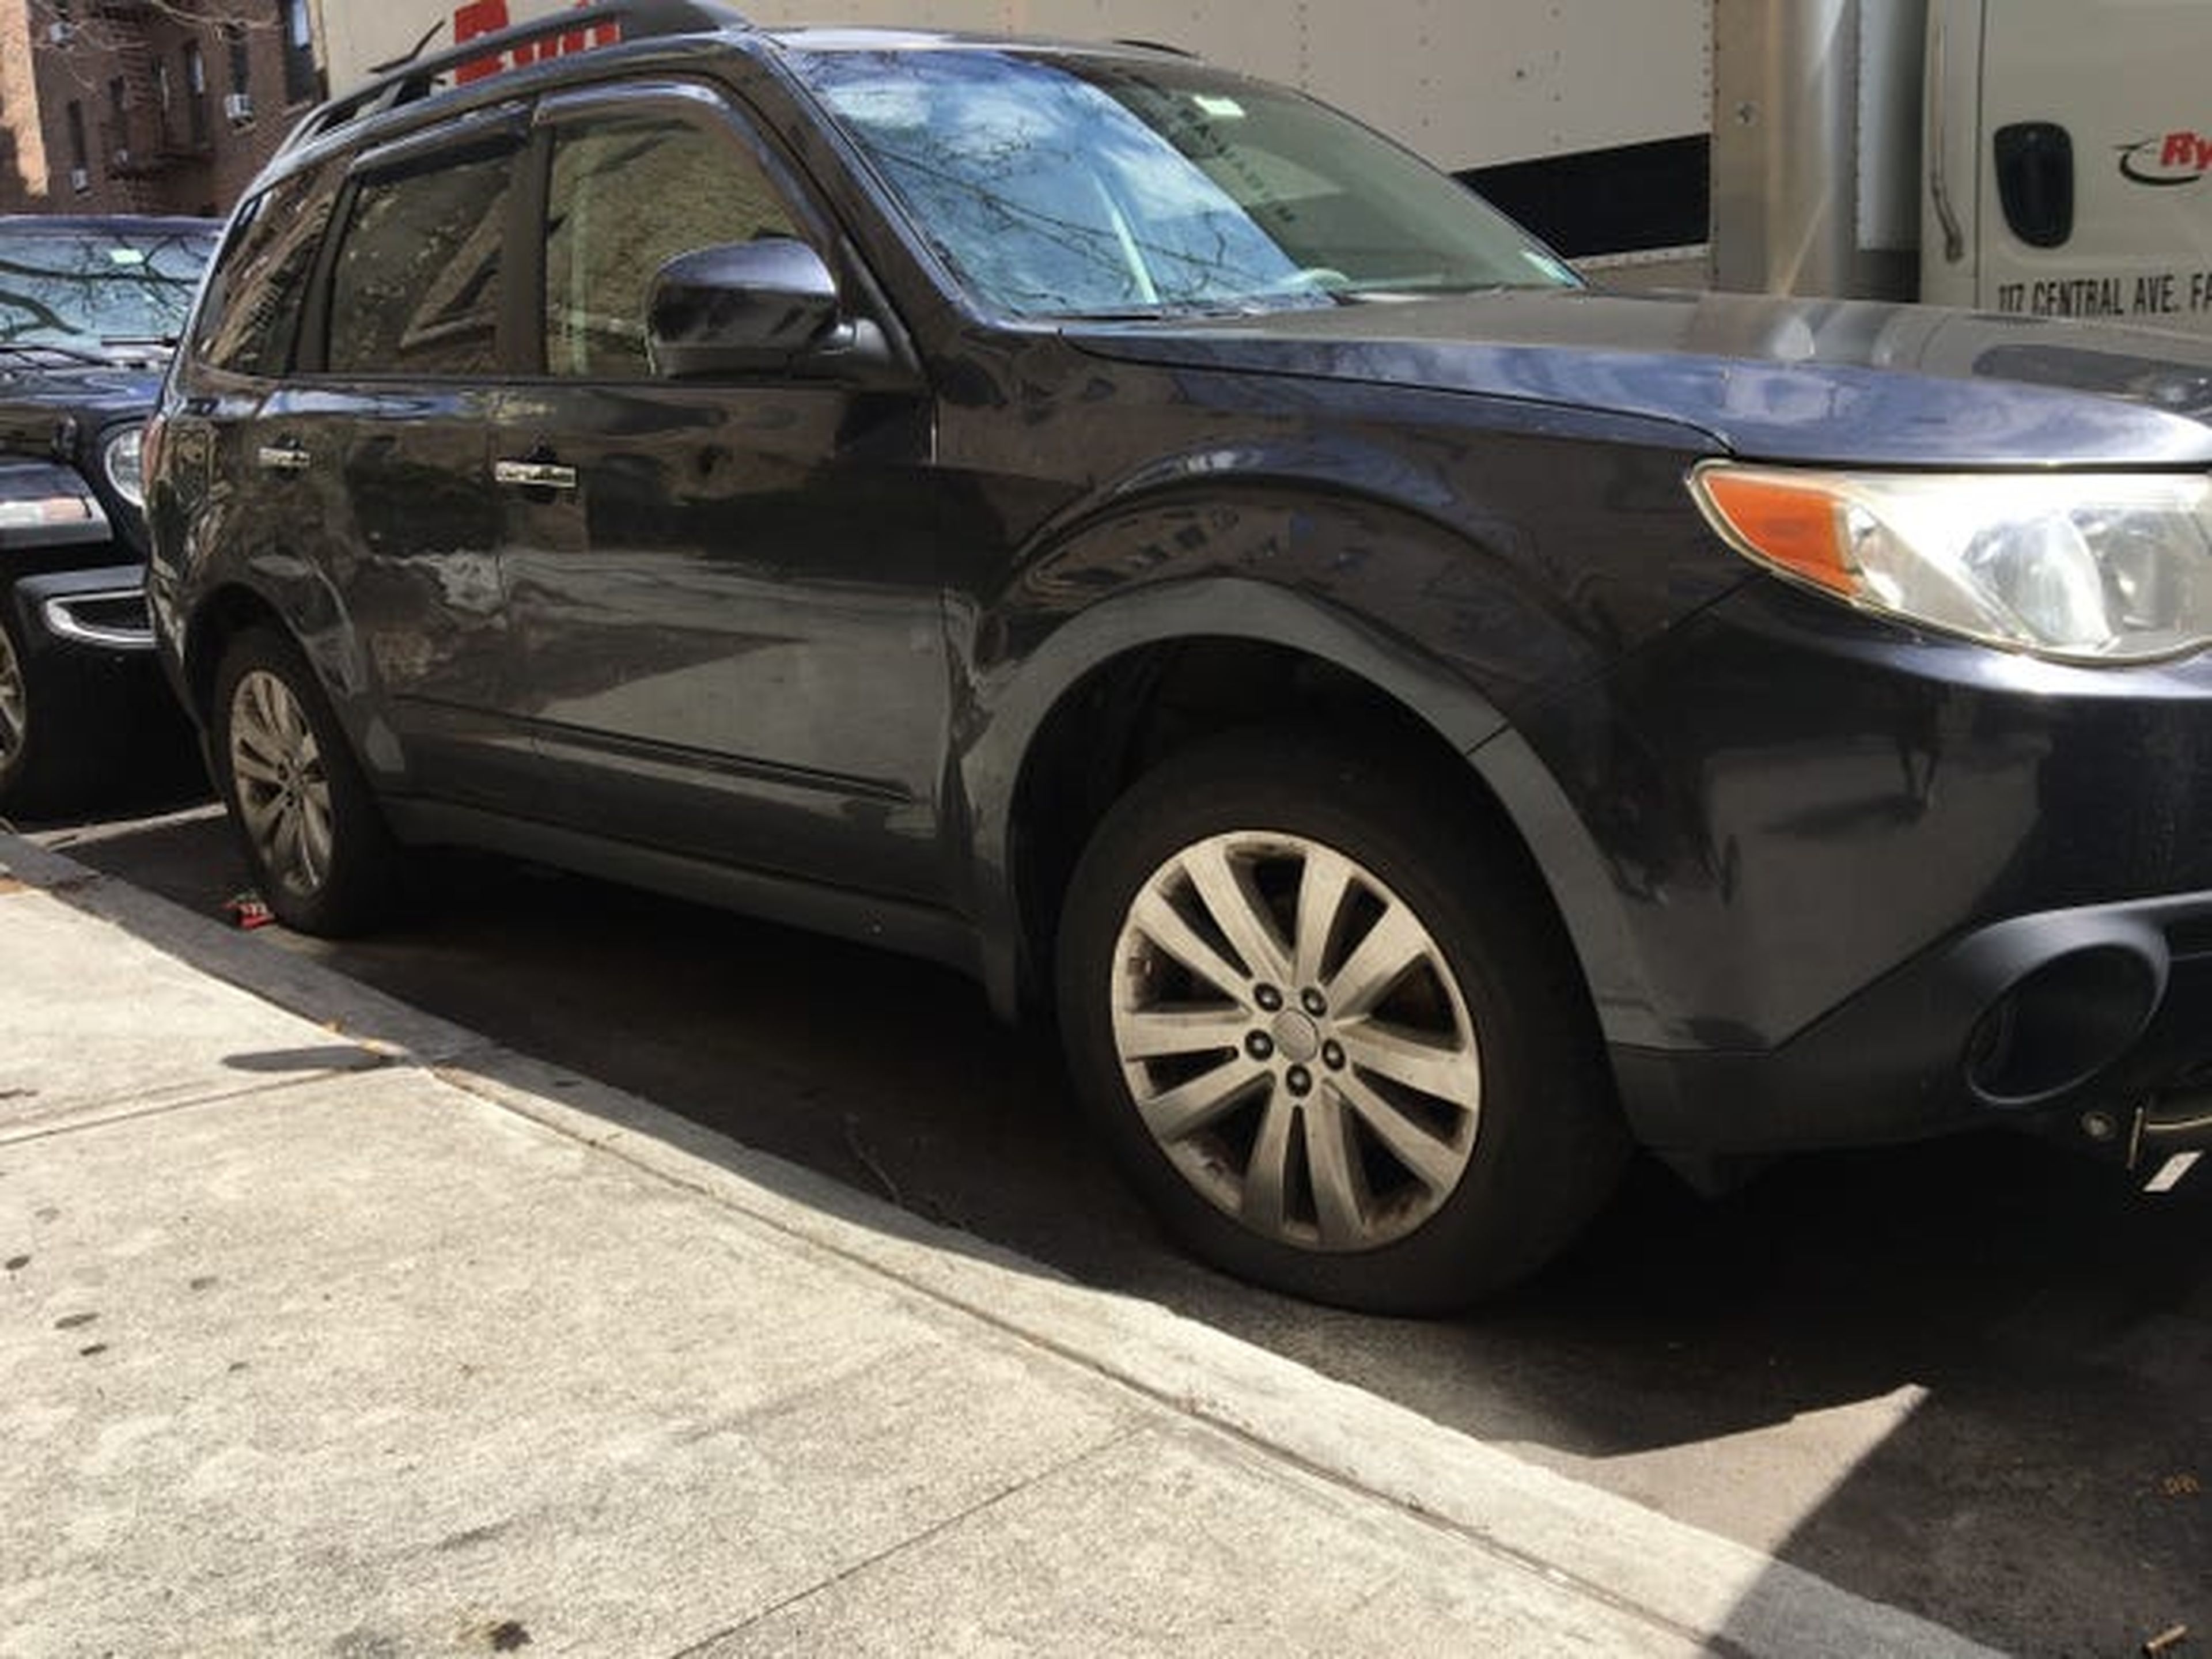 Coche con neumáticos deshinchados aparcado en Nueva York durante la pandemia de coronavirus.